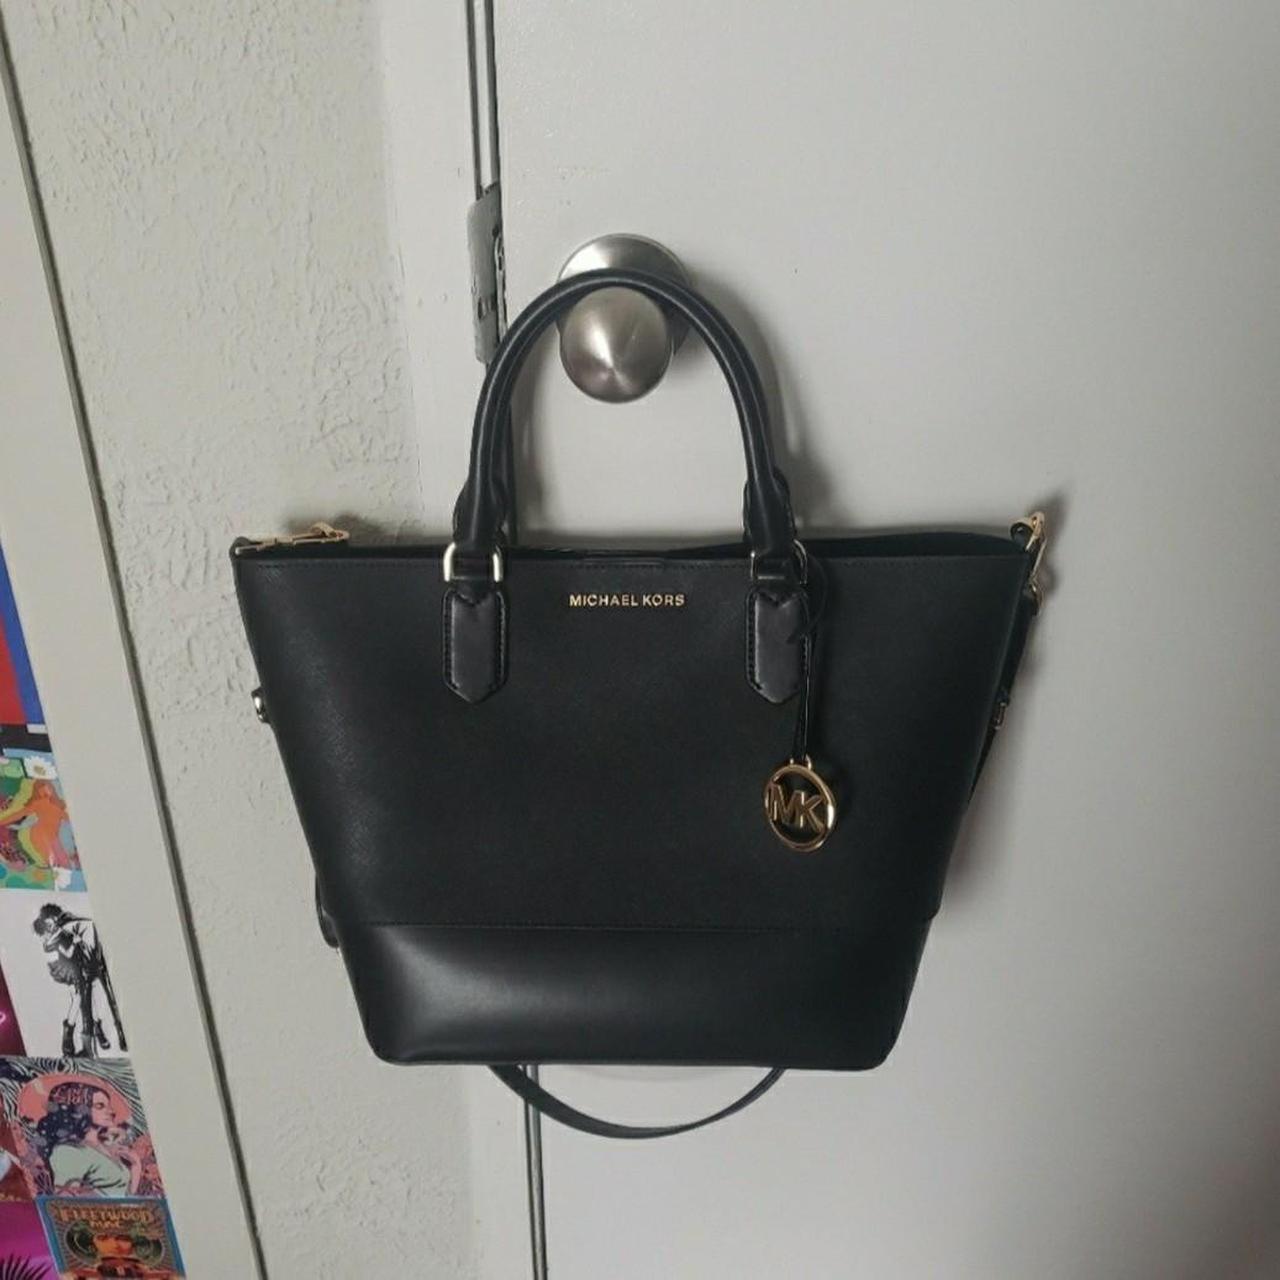 Original Bag Michael Kors Leather Women Tote Handbag Preowned